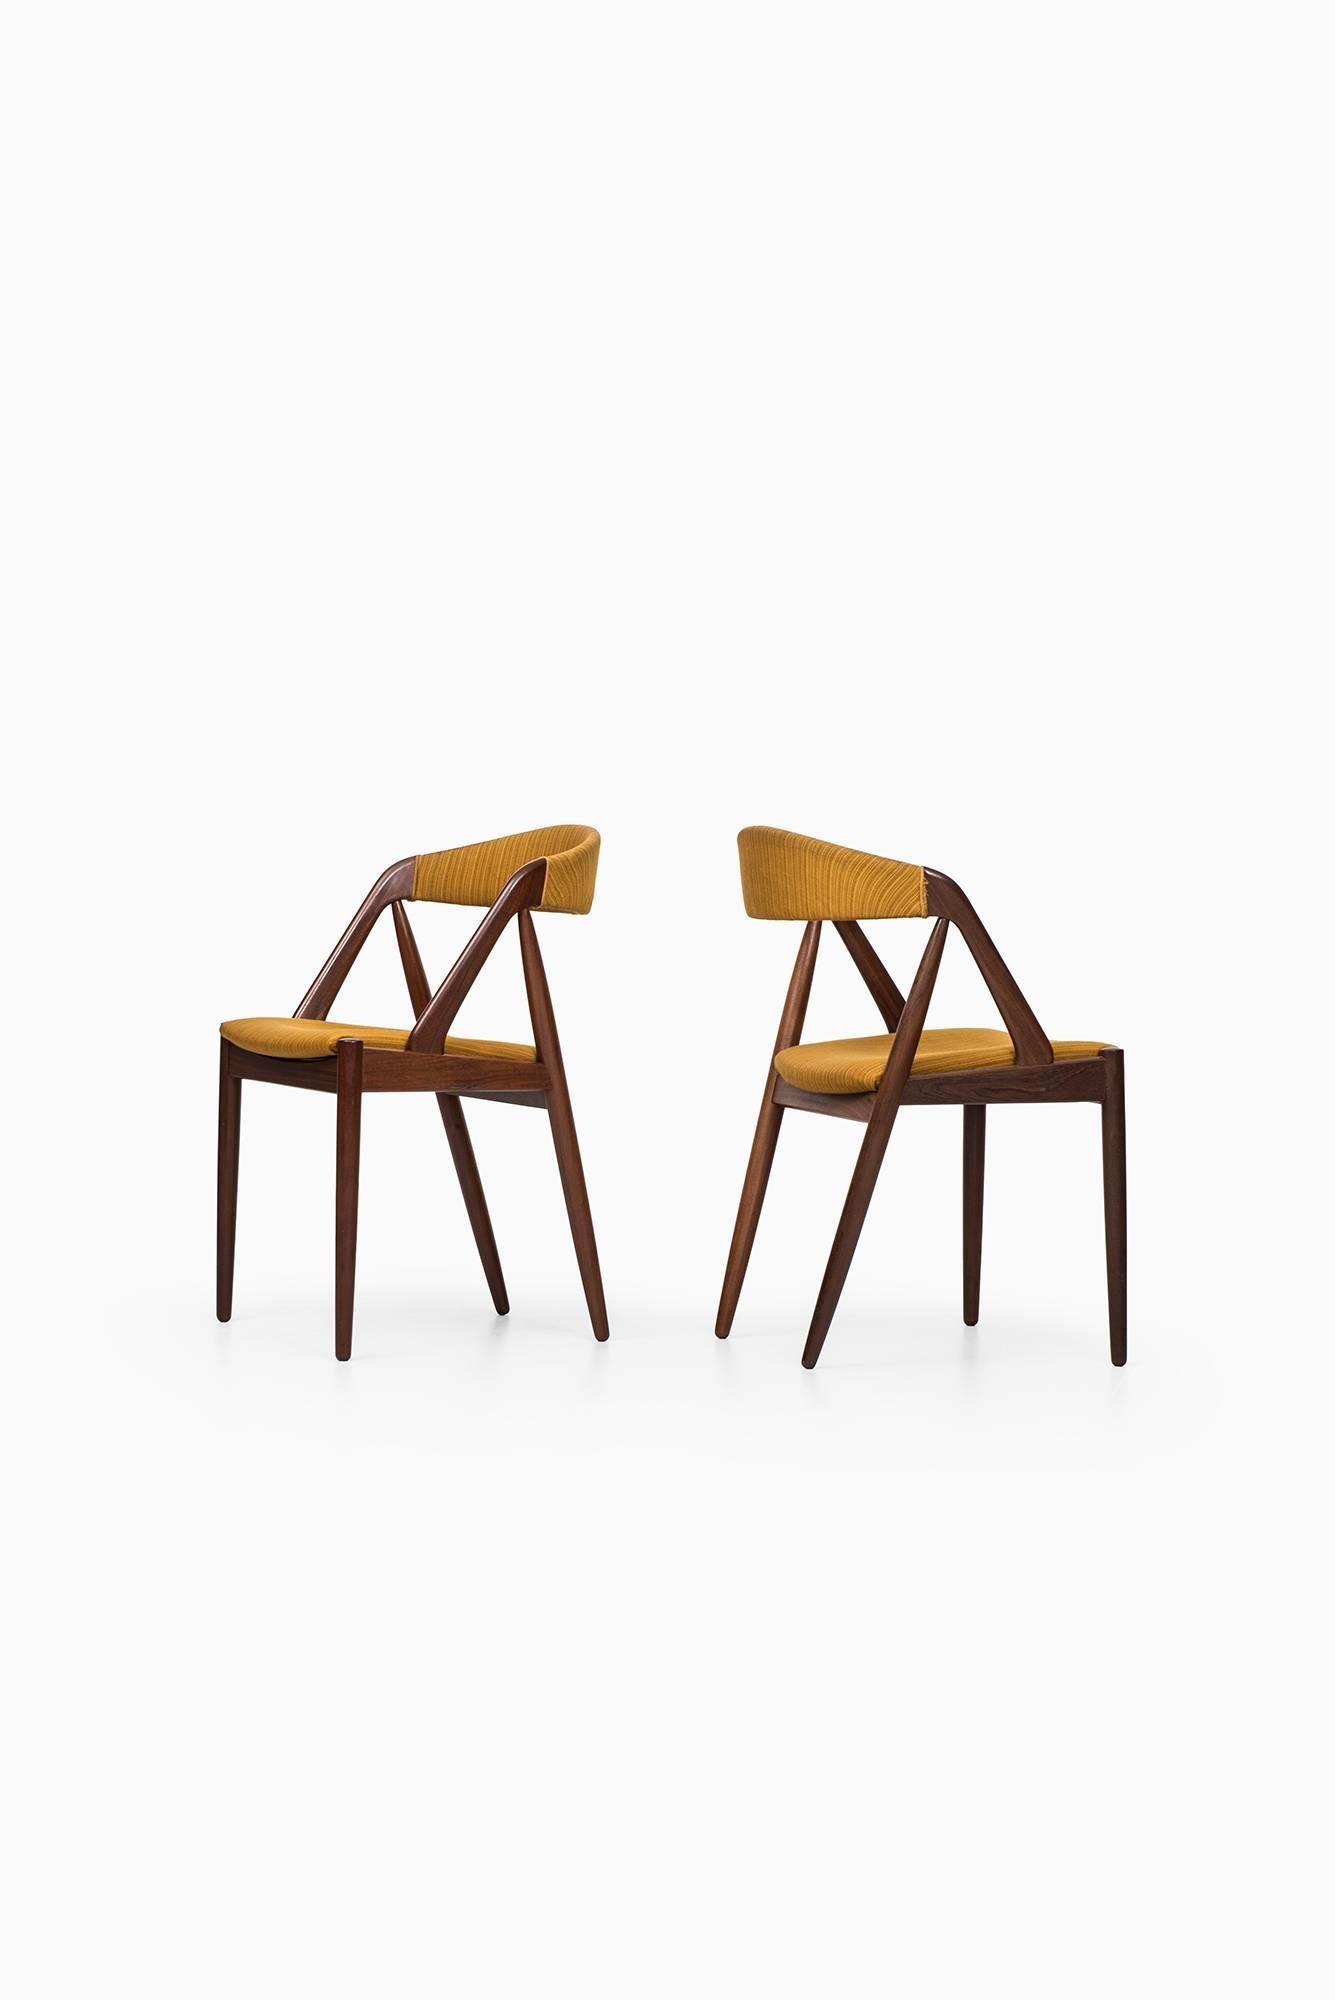 Mid-20th Century Kai Kristiansen Dining Chairs by Schou Andersen in Denmark